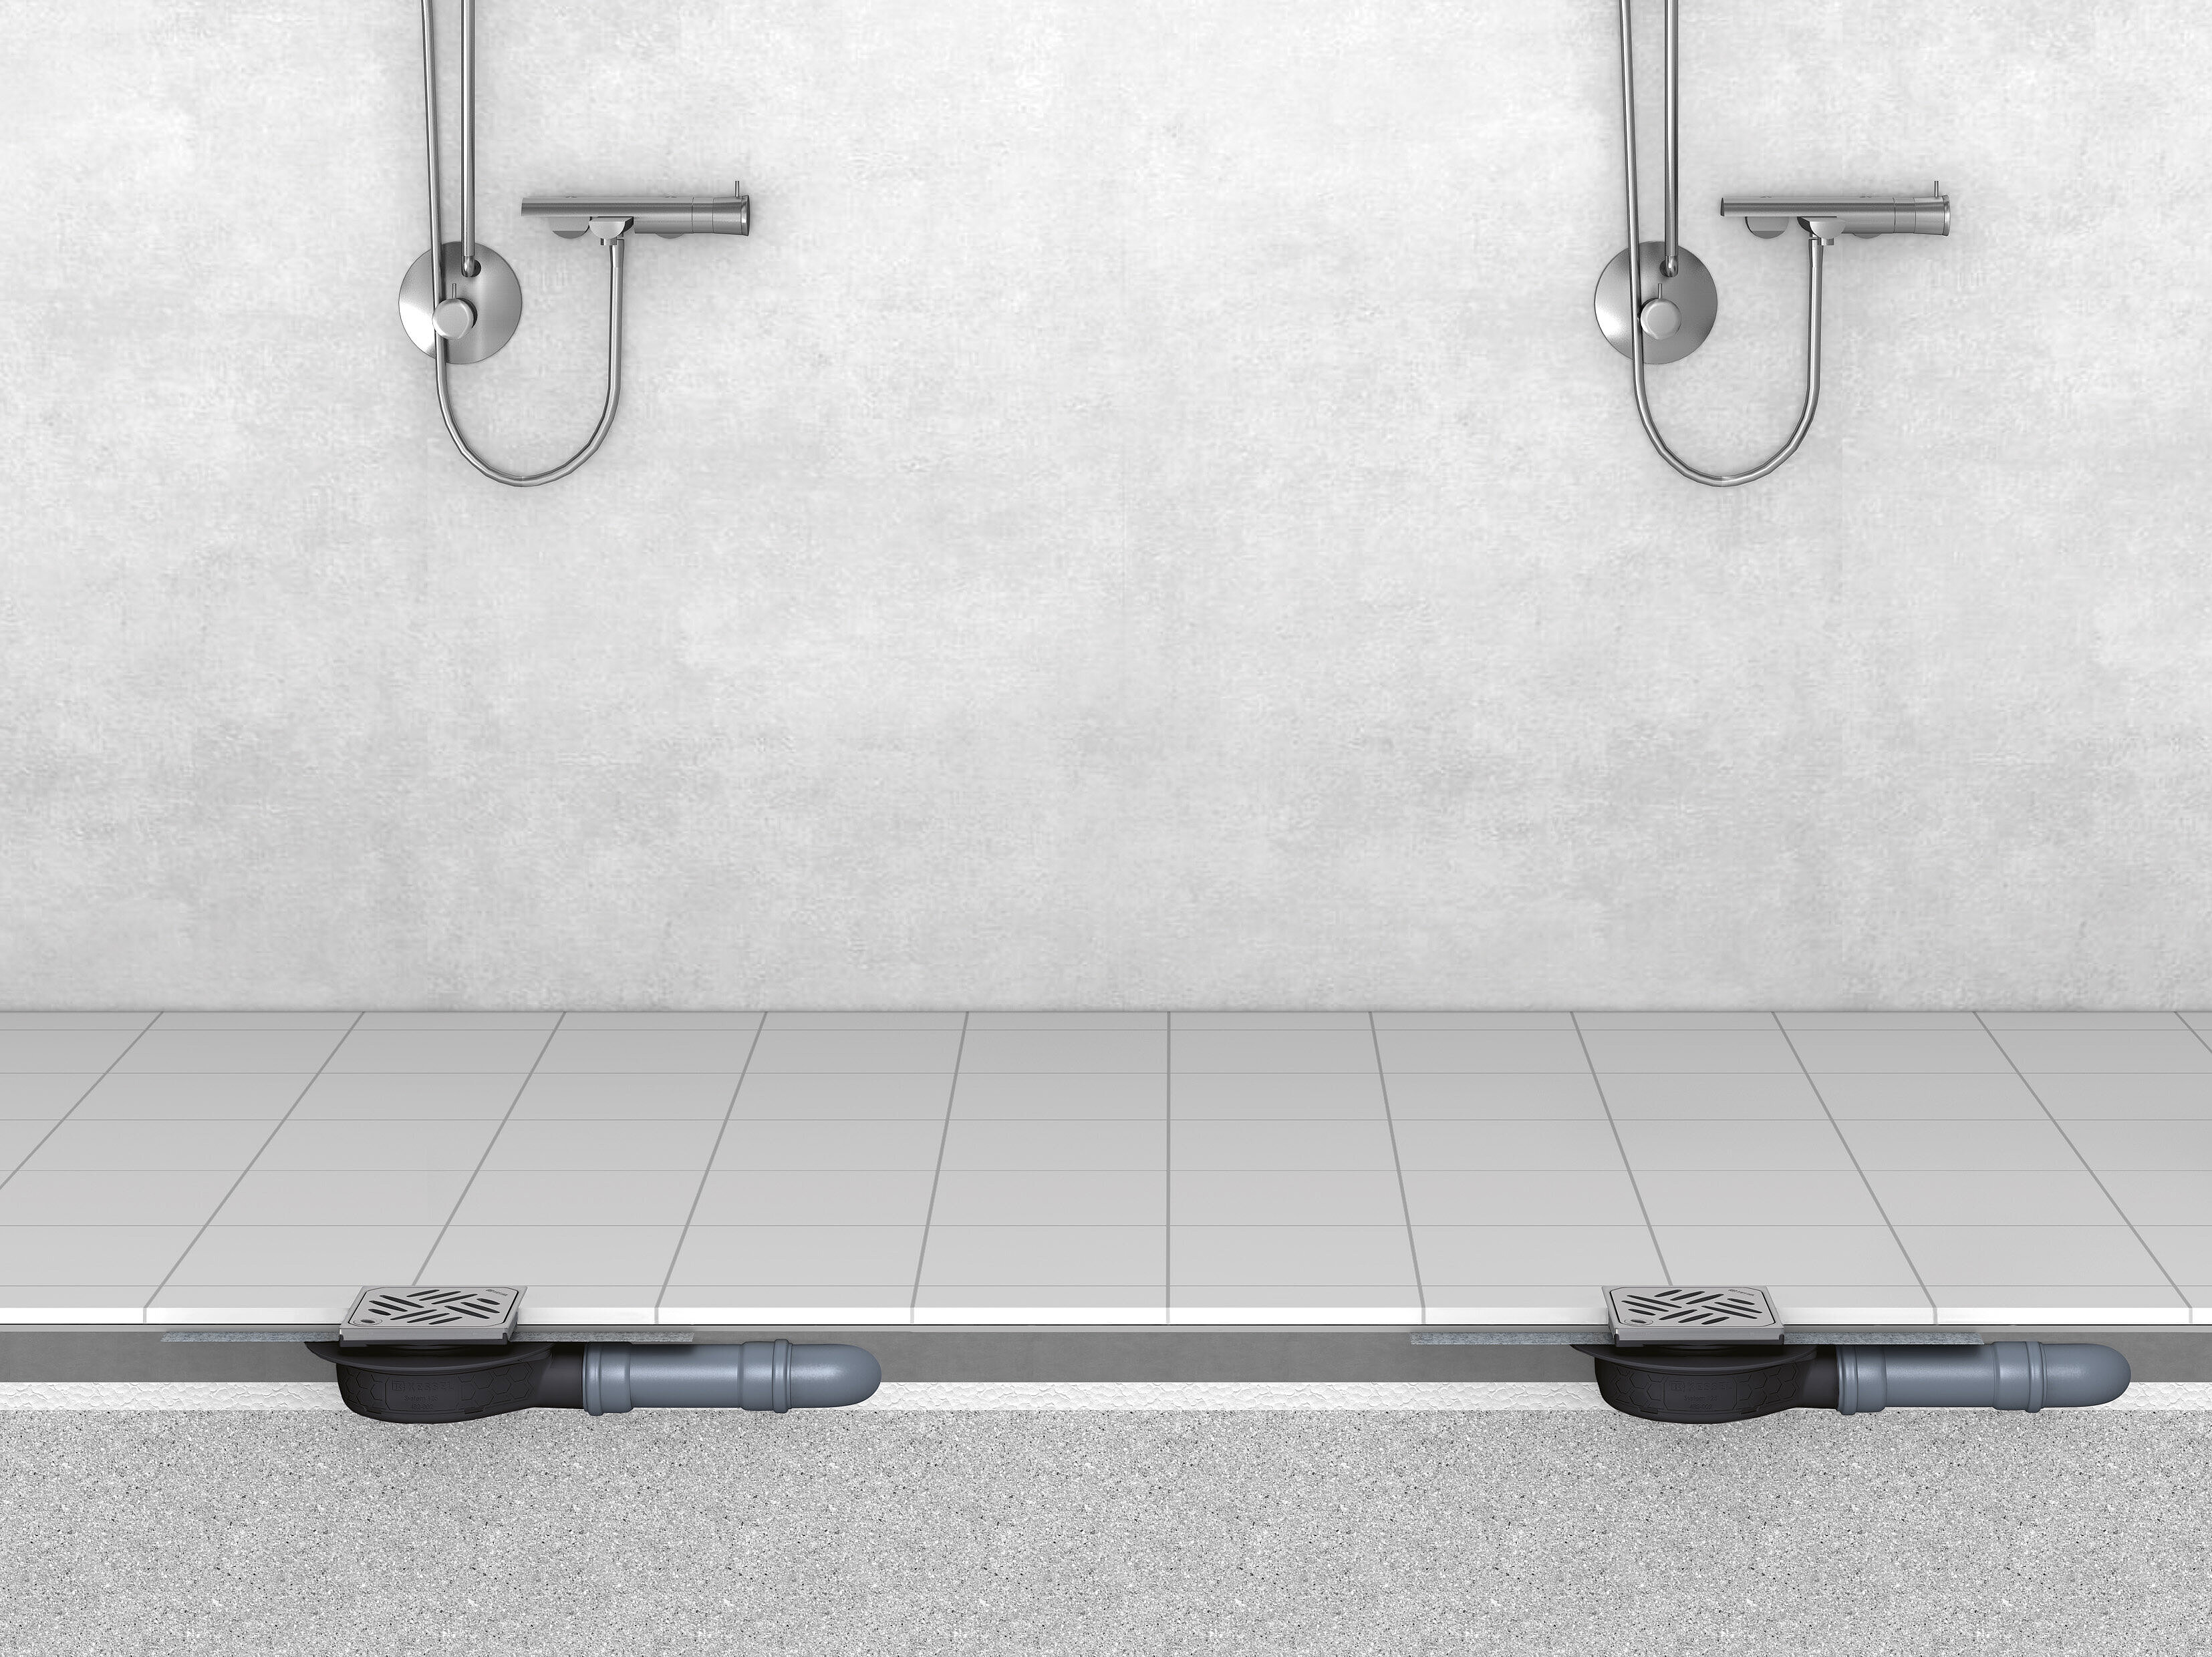 Schema di installazione dello scarico per bagni “L'Ultrapiatto” con griglia Design Kessel e sistema di bloccaggio Lock & Lift